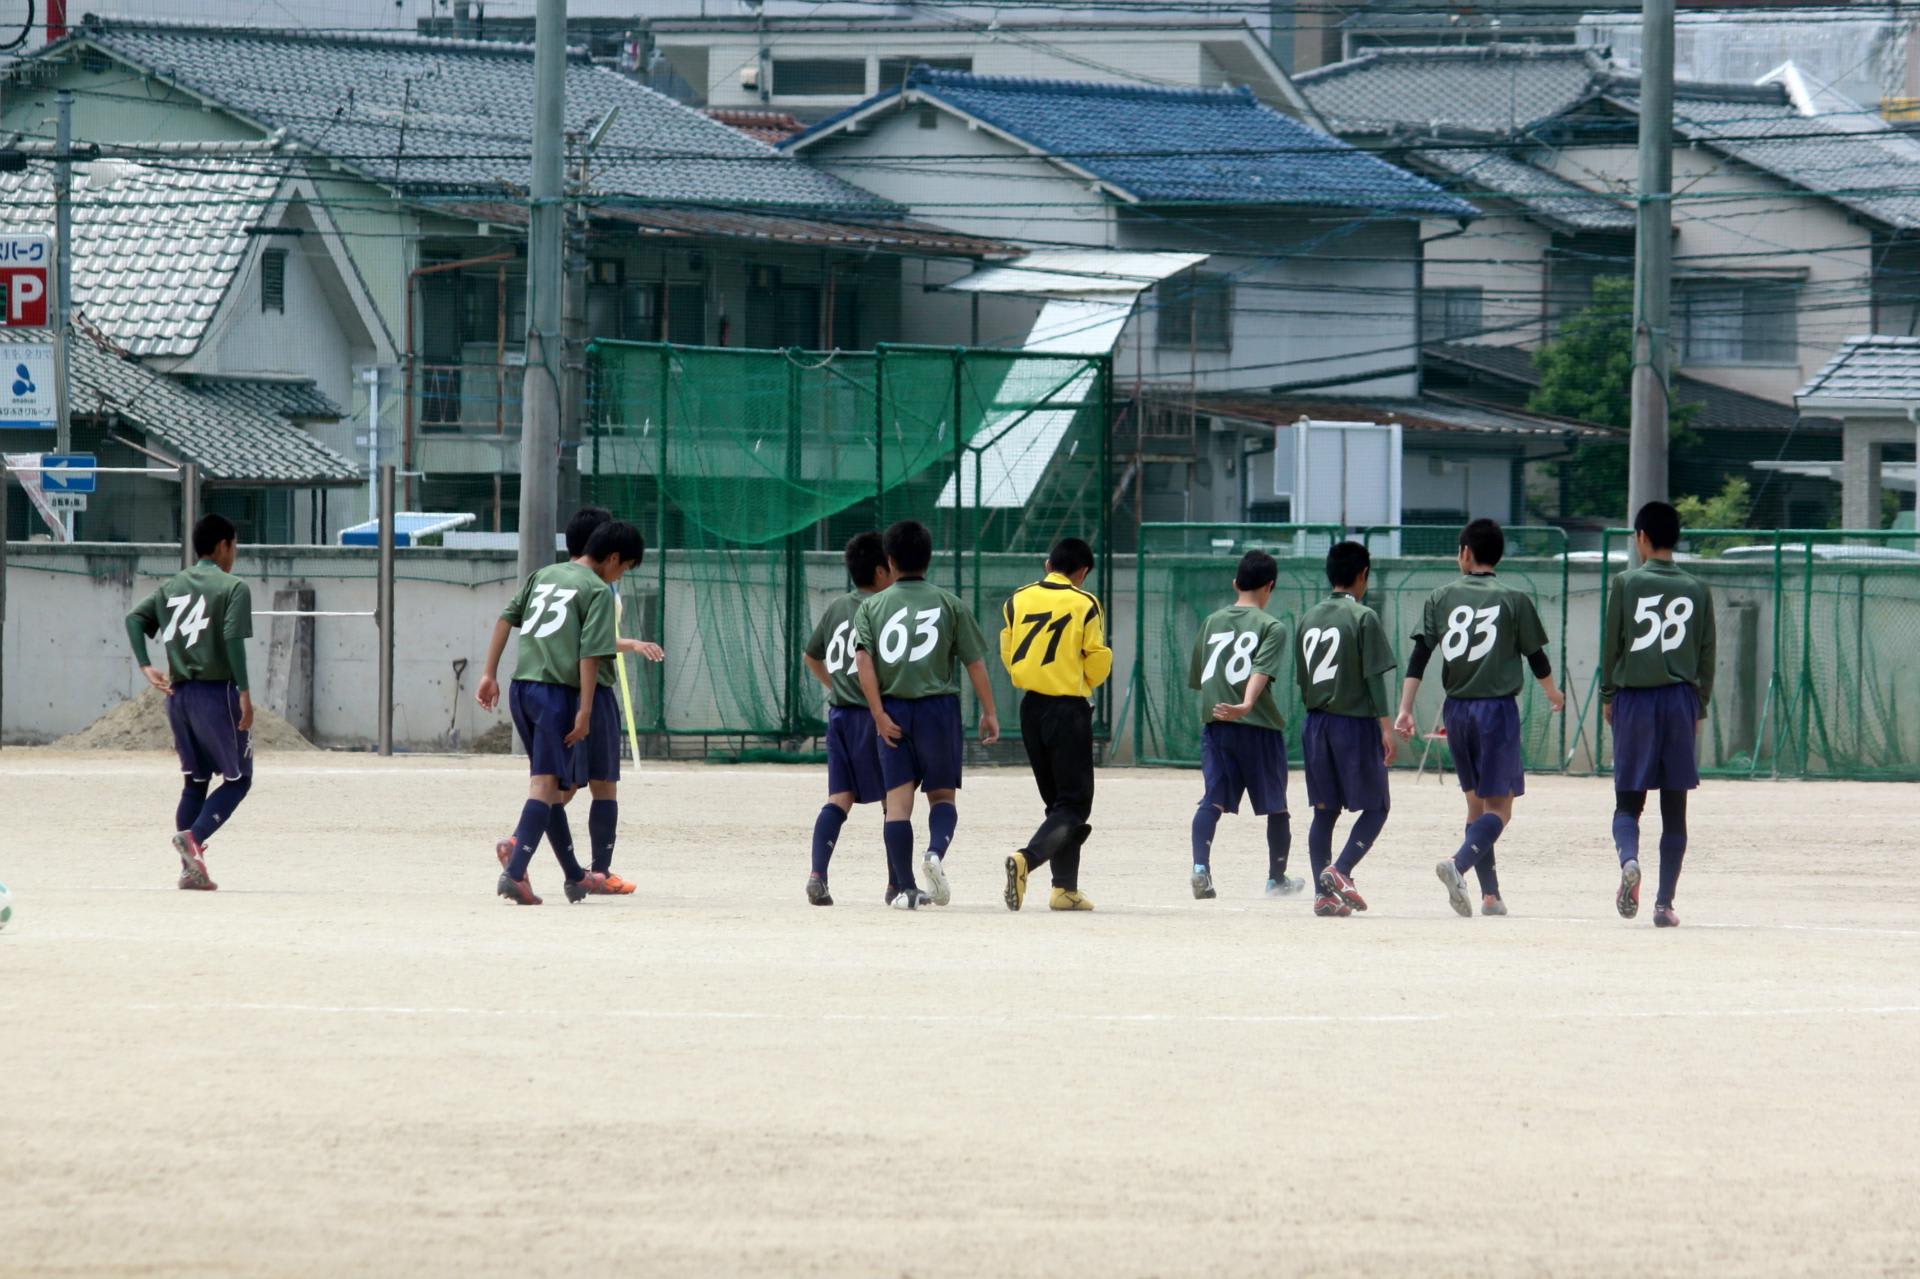 14 05 04 ミカサカップ 観音高校g 広島観音高校サッカー部の写真